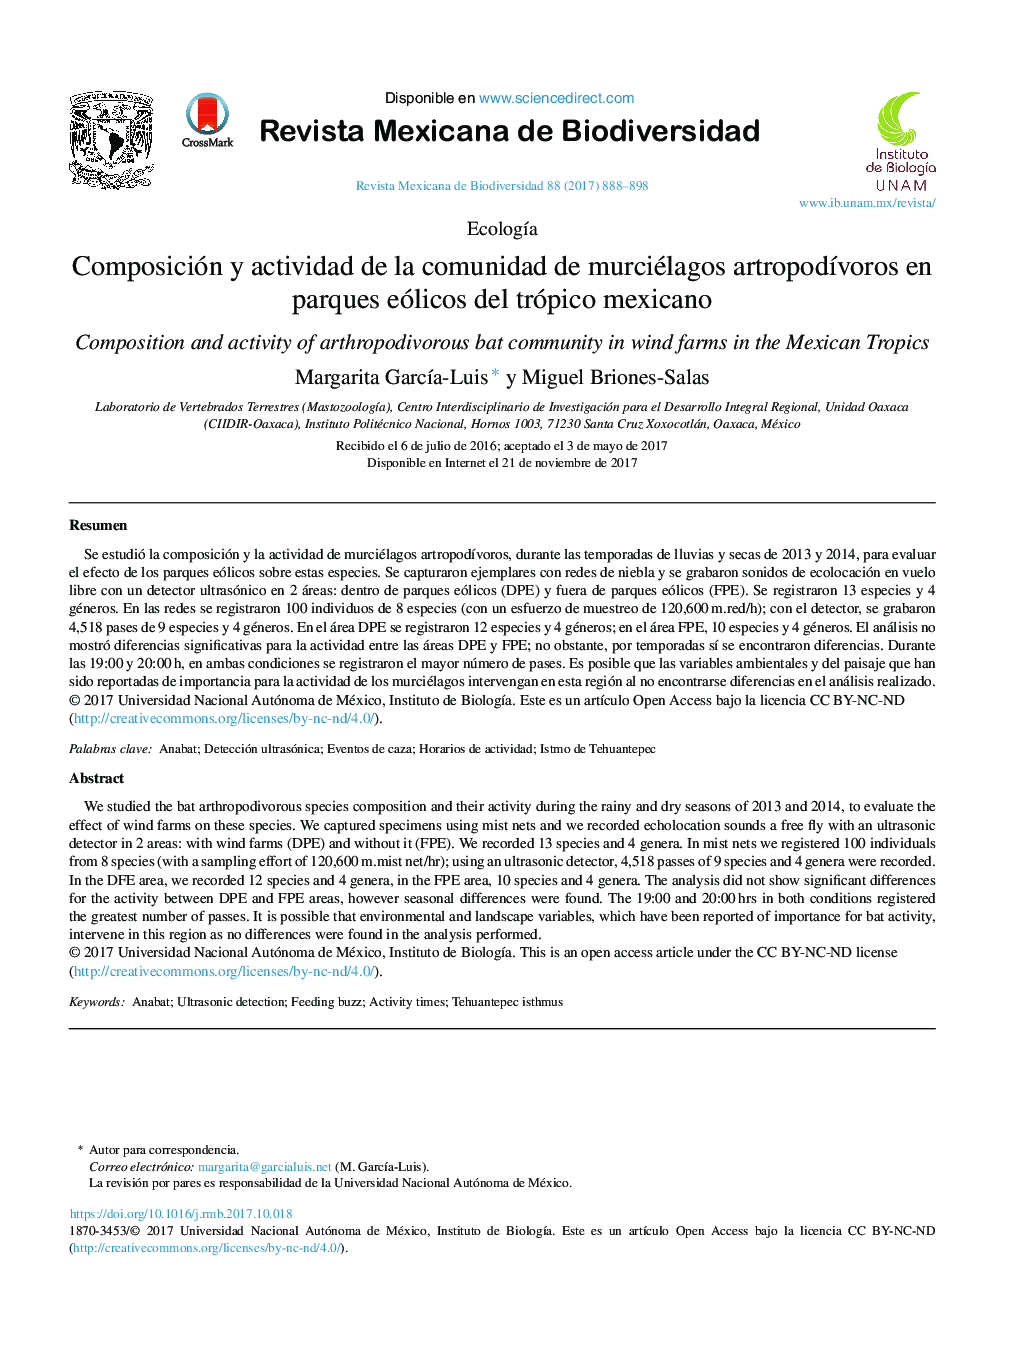 Composición y actividad de la comunidad de murciélagos artropodÃ­voros en parques eólicos del trópico mexicano